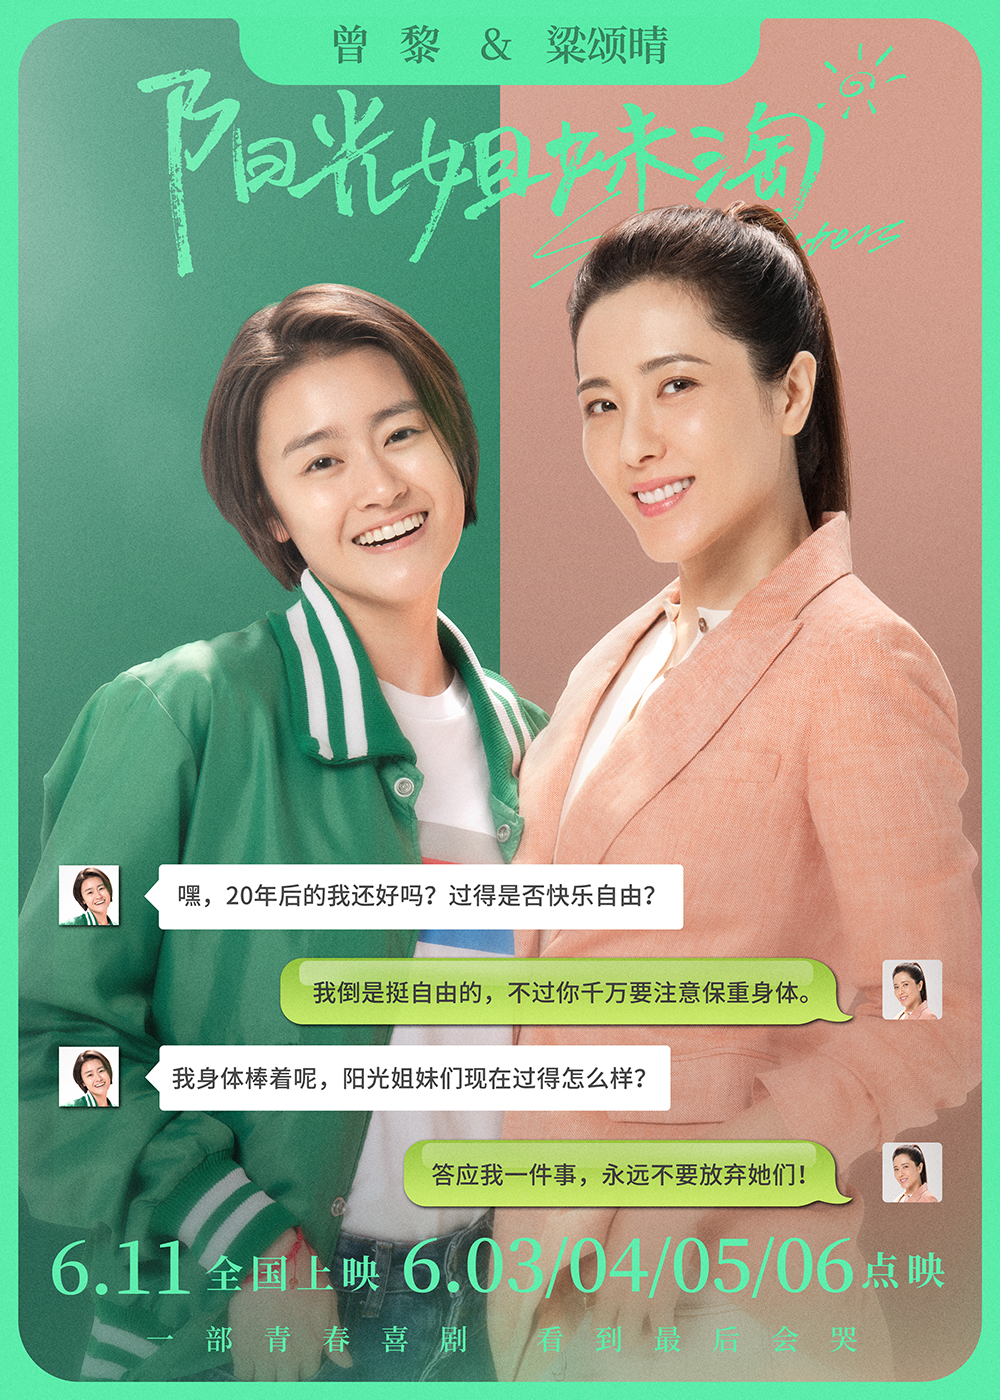 电影《阳光姐妹淘》发布大演员特辑6月3日到6月6日超前点映